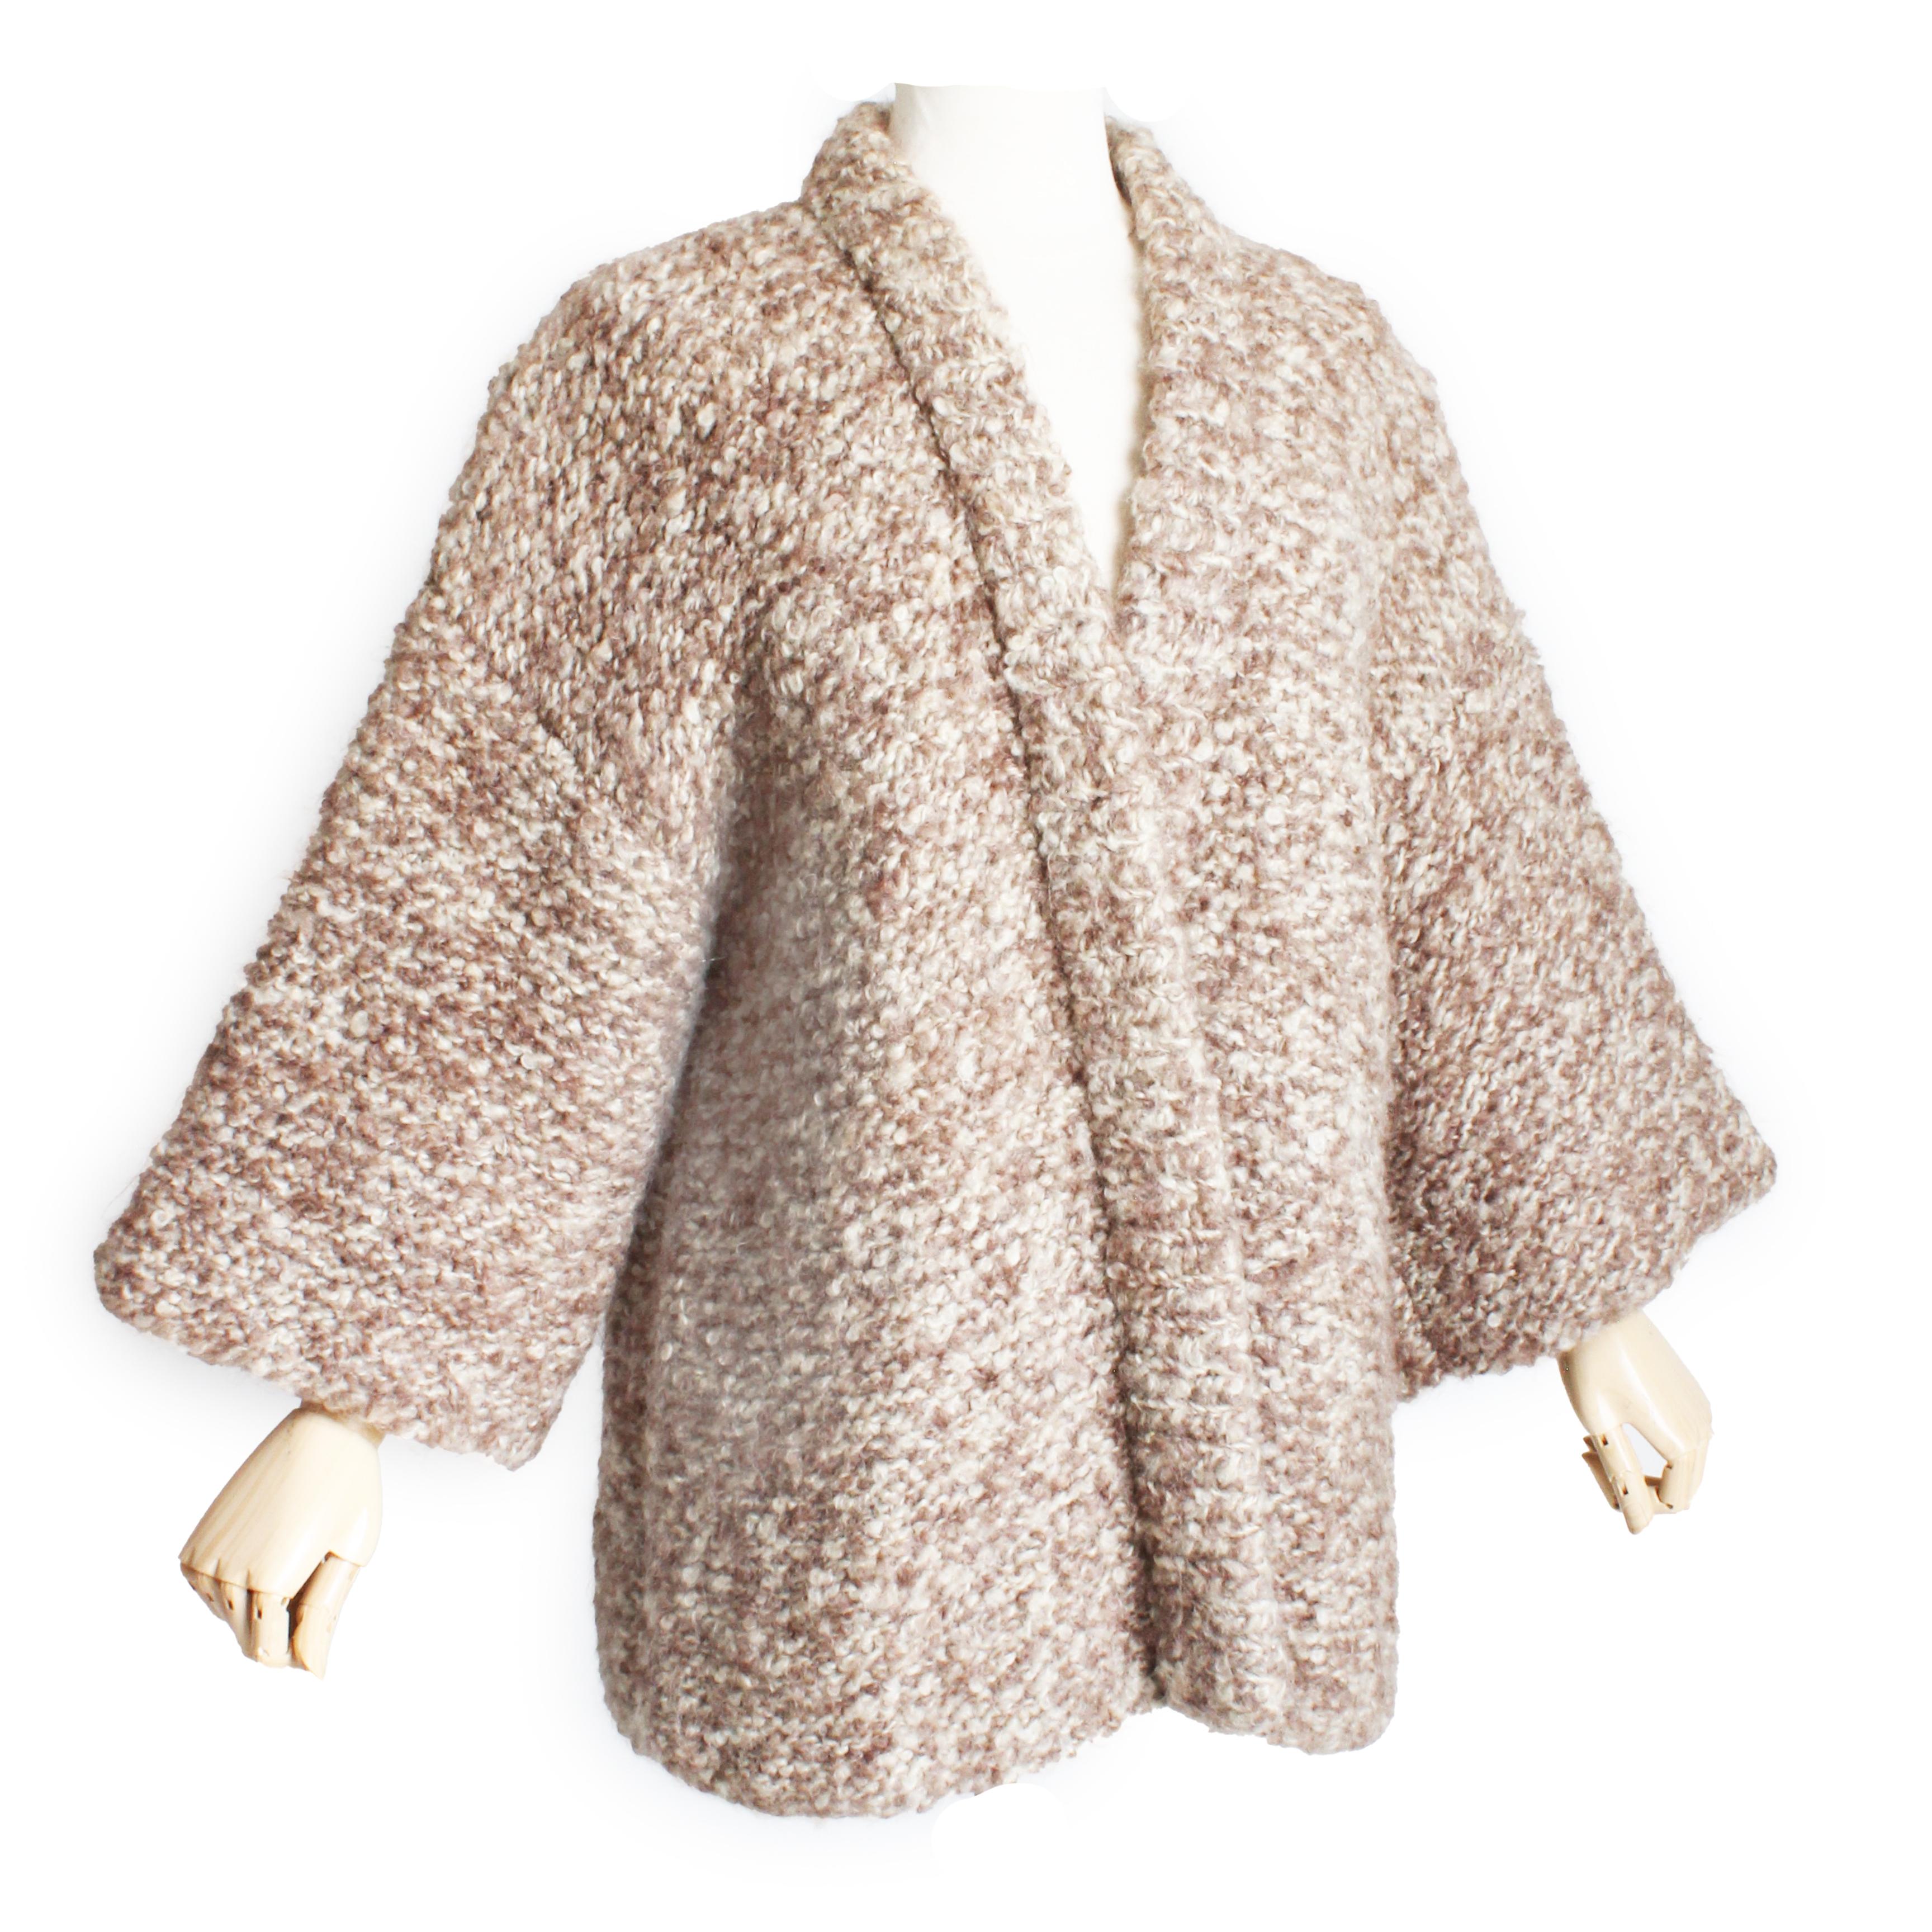 Veste cardigan Noh vintage Bonnie Cashin 'The Knittery', fabriquée en 1972.  Confectionné dans une maille épaisse dans des tons avoine, crème et marron, il présente des manches de style kimono et une construction ouverte, ce qui le rend parfait pour